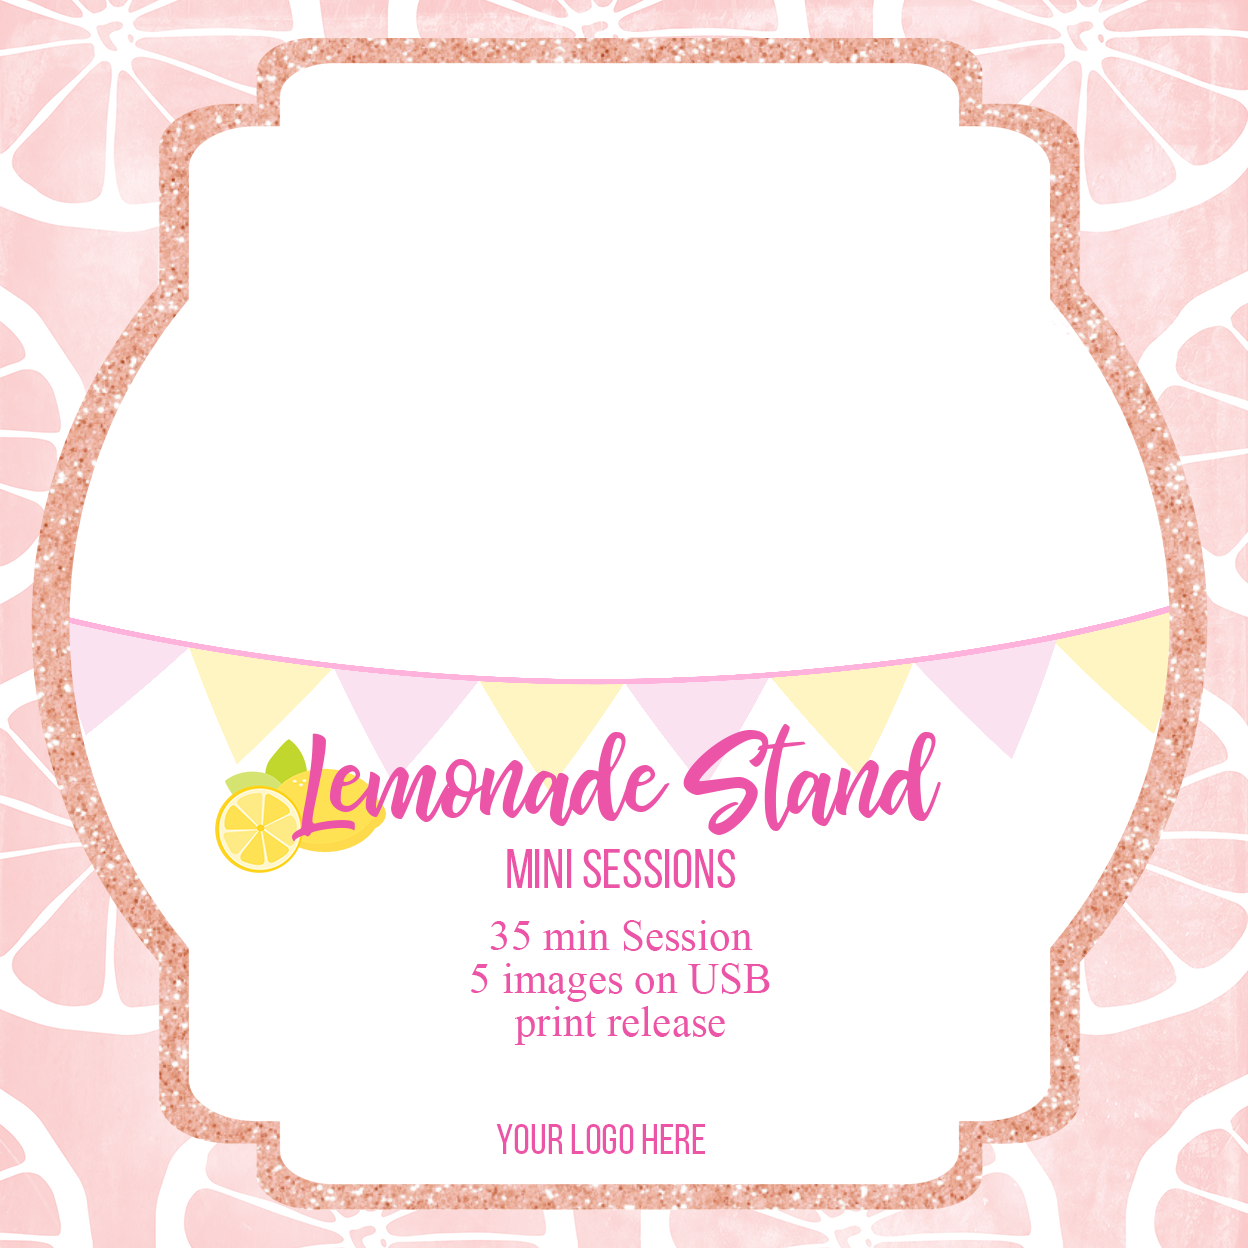 Lemonade Stand Mini Sessions Square Marketing Template - Meg Bitton Productions